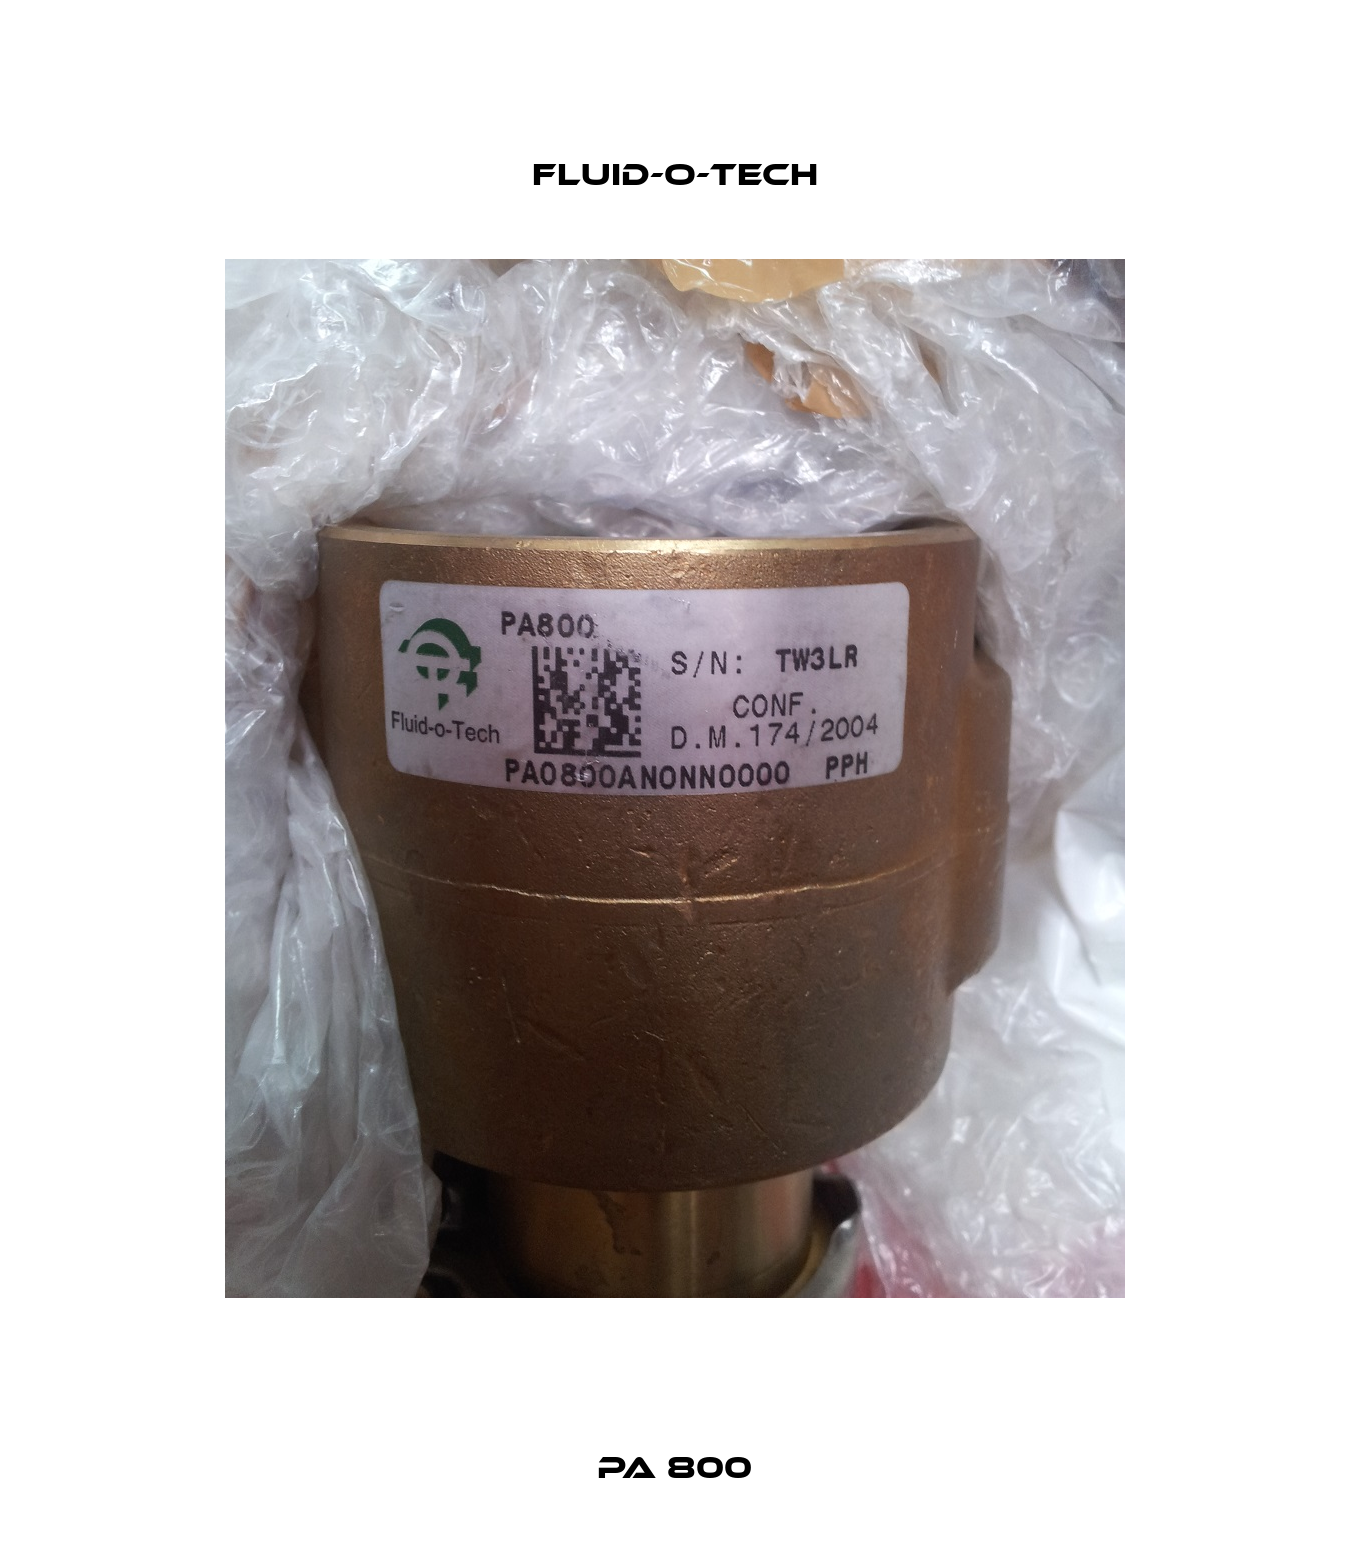 PA 800 Fluid-O-Tech